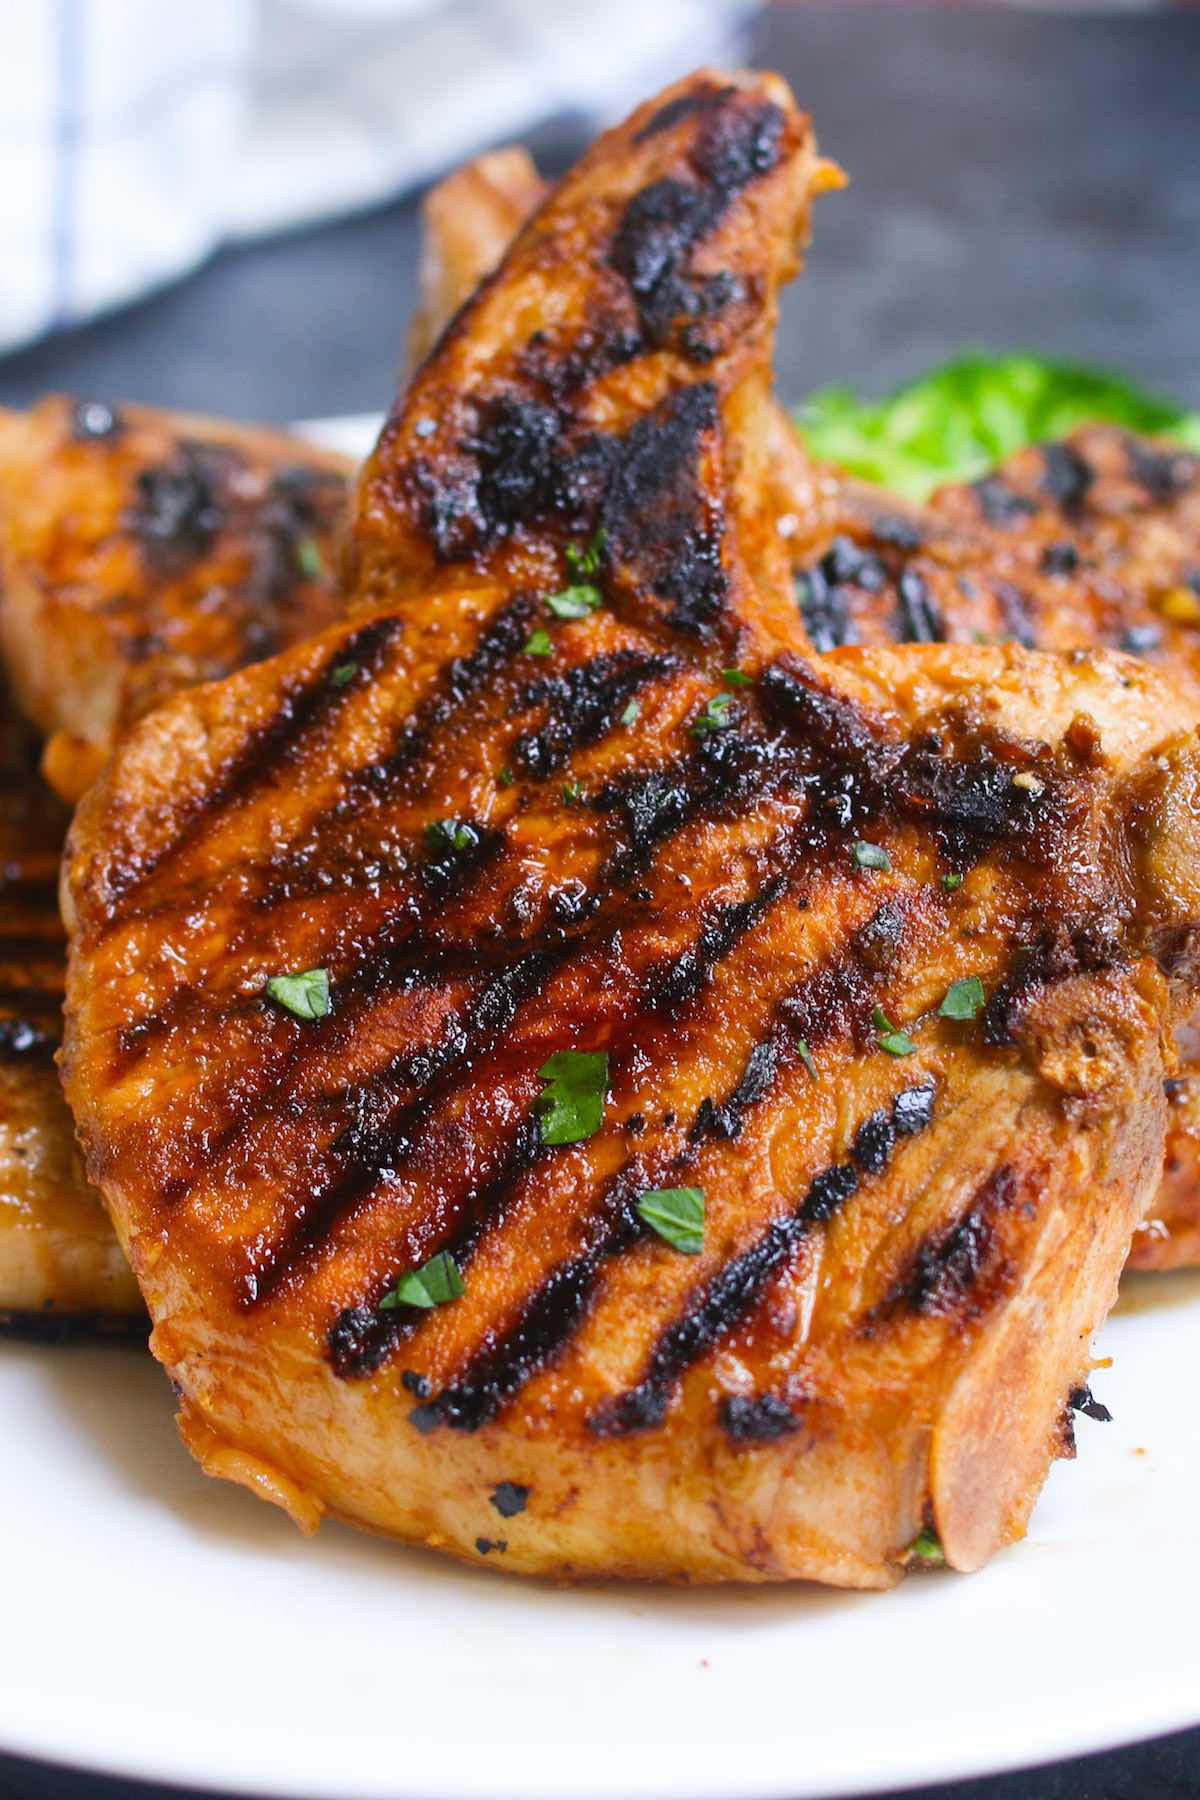 Best Ever Pork Chop Marinade So Tender And Juicy,American Chop Suey Recipe Chicken